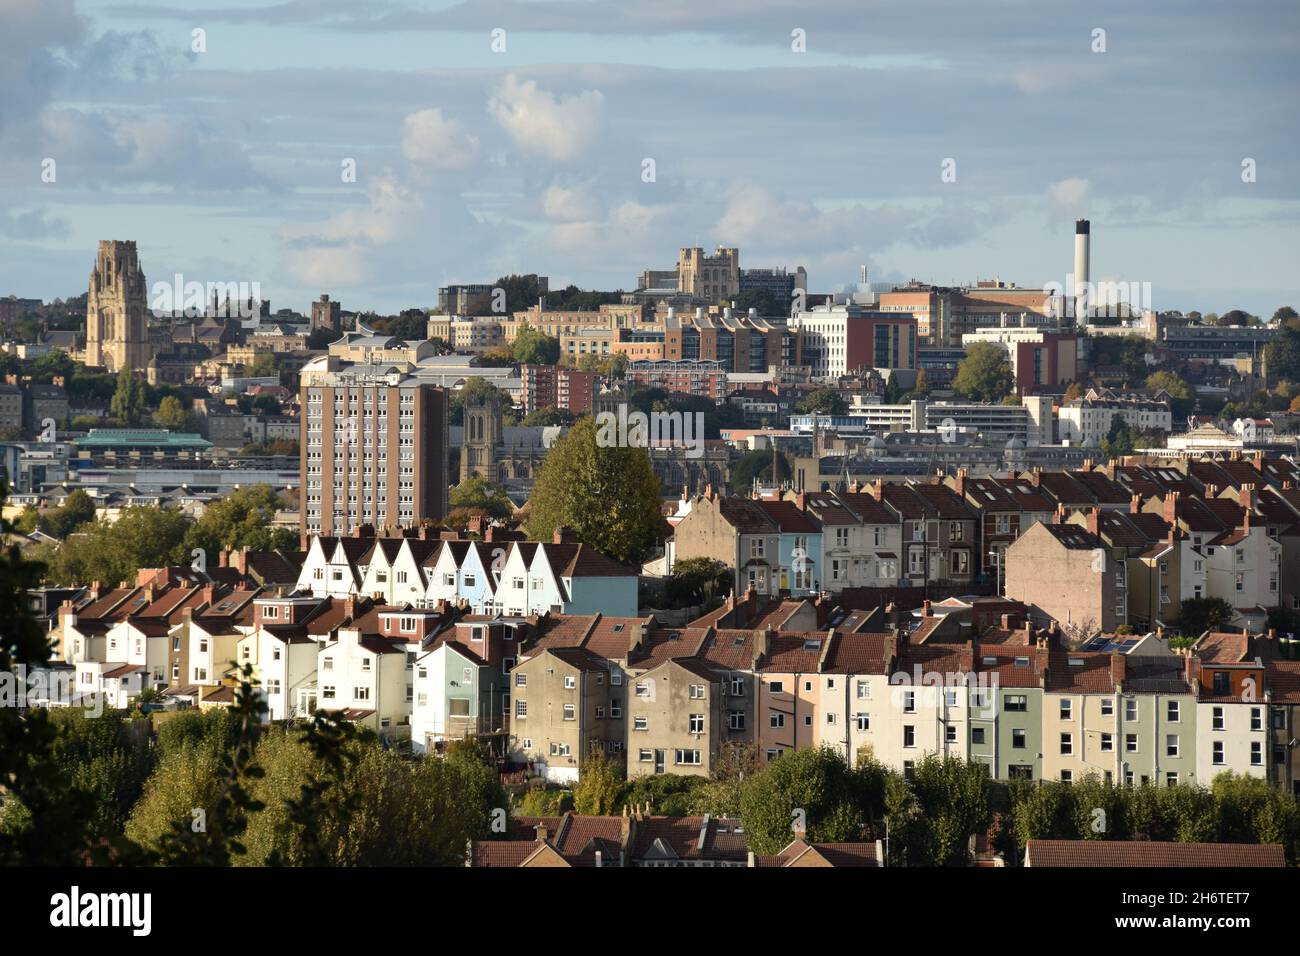 Paisaje urbano de Bristol visto desde la reserva natural de las laderas del norte. Terrazas suburbanas en primer plano con el horizonte del centro de la ciudad en el horizonte Foto de stock